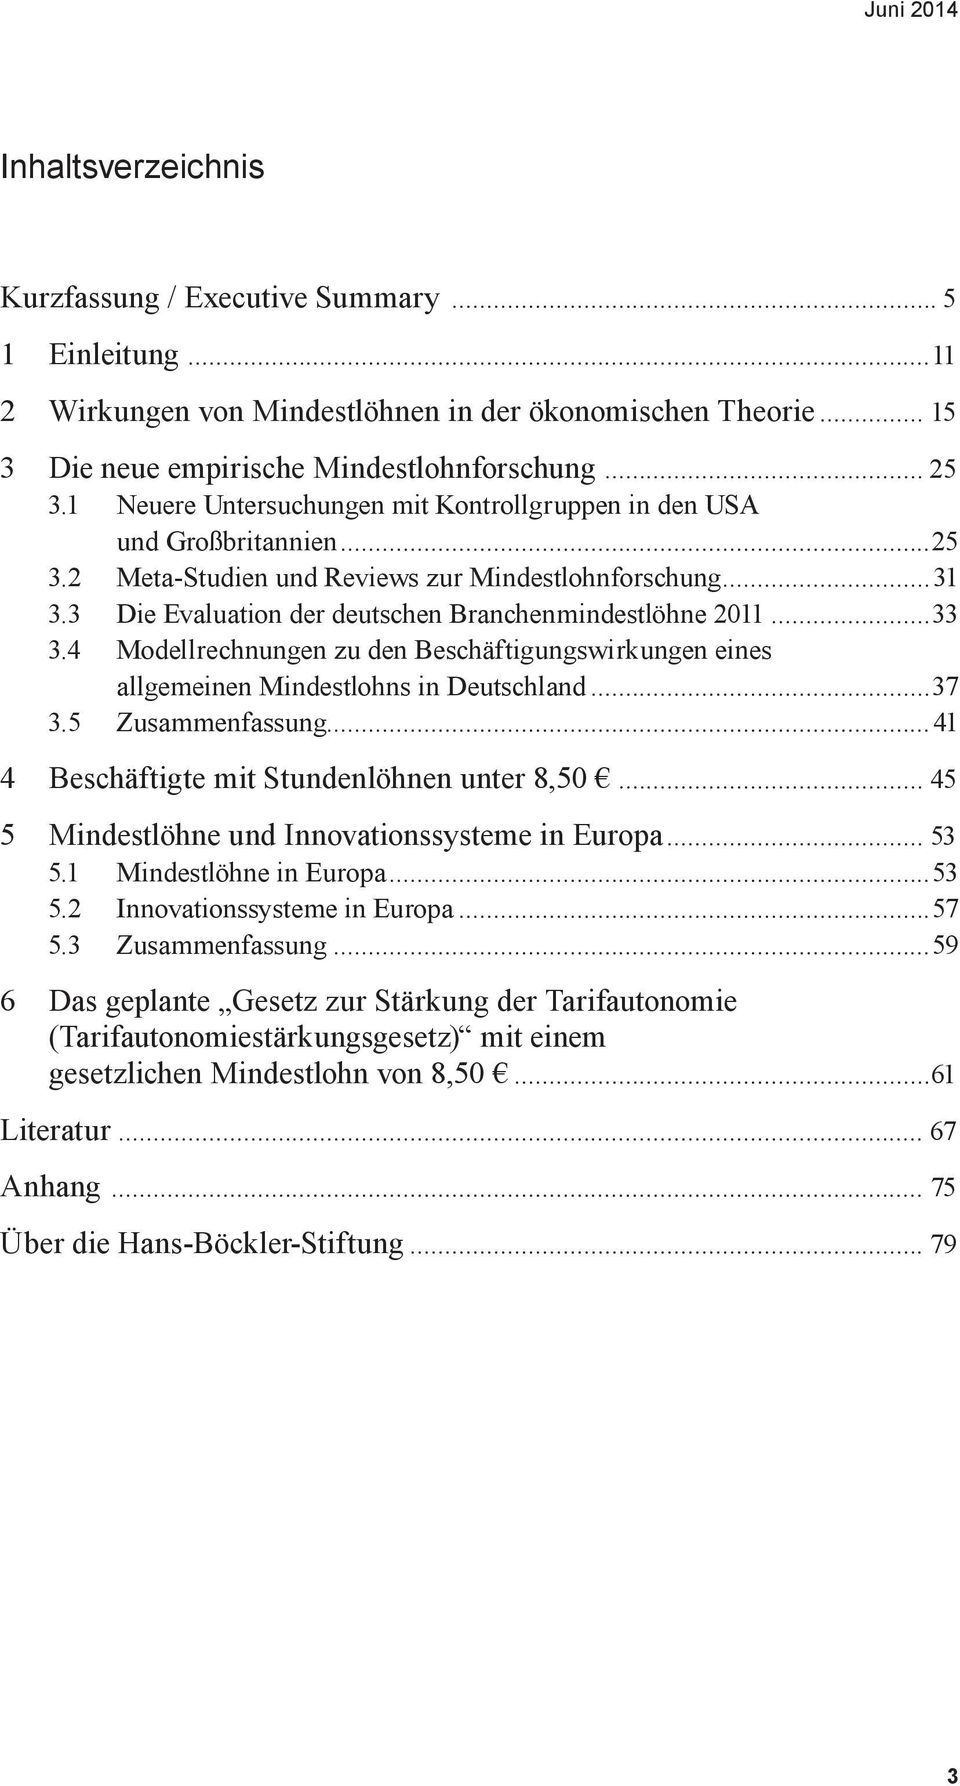 ..33 3.4 Modellrechnungen zu den Beschäftigungswirkungen eines allgemeinen Mindestlohns in Deutschland...37 3.5 Zusammenfassung...41 4 Beschäftigte mit Stundenlöhnen unter 8,50.